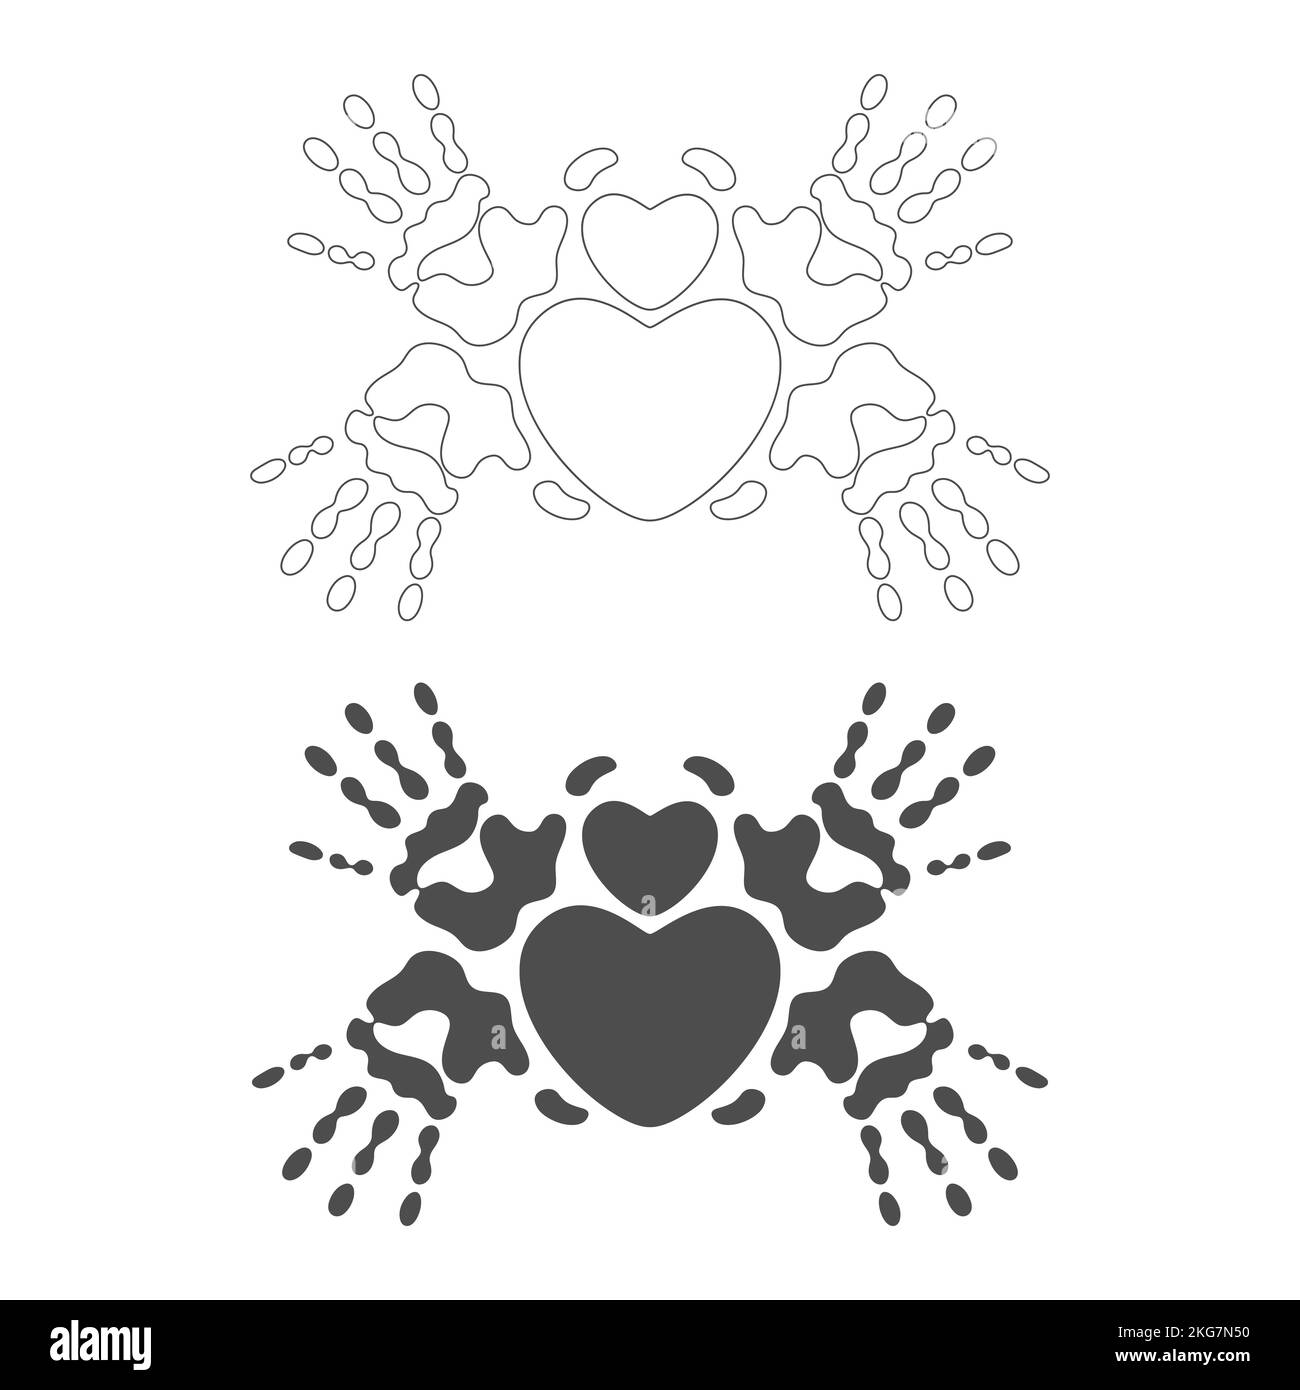 Coeur de palmier Banque d'images noir et blanc - Alamy